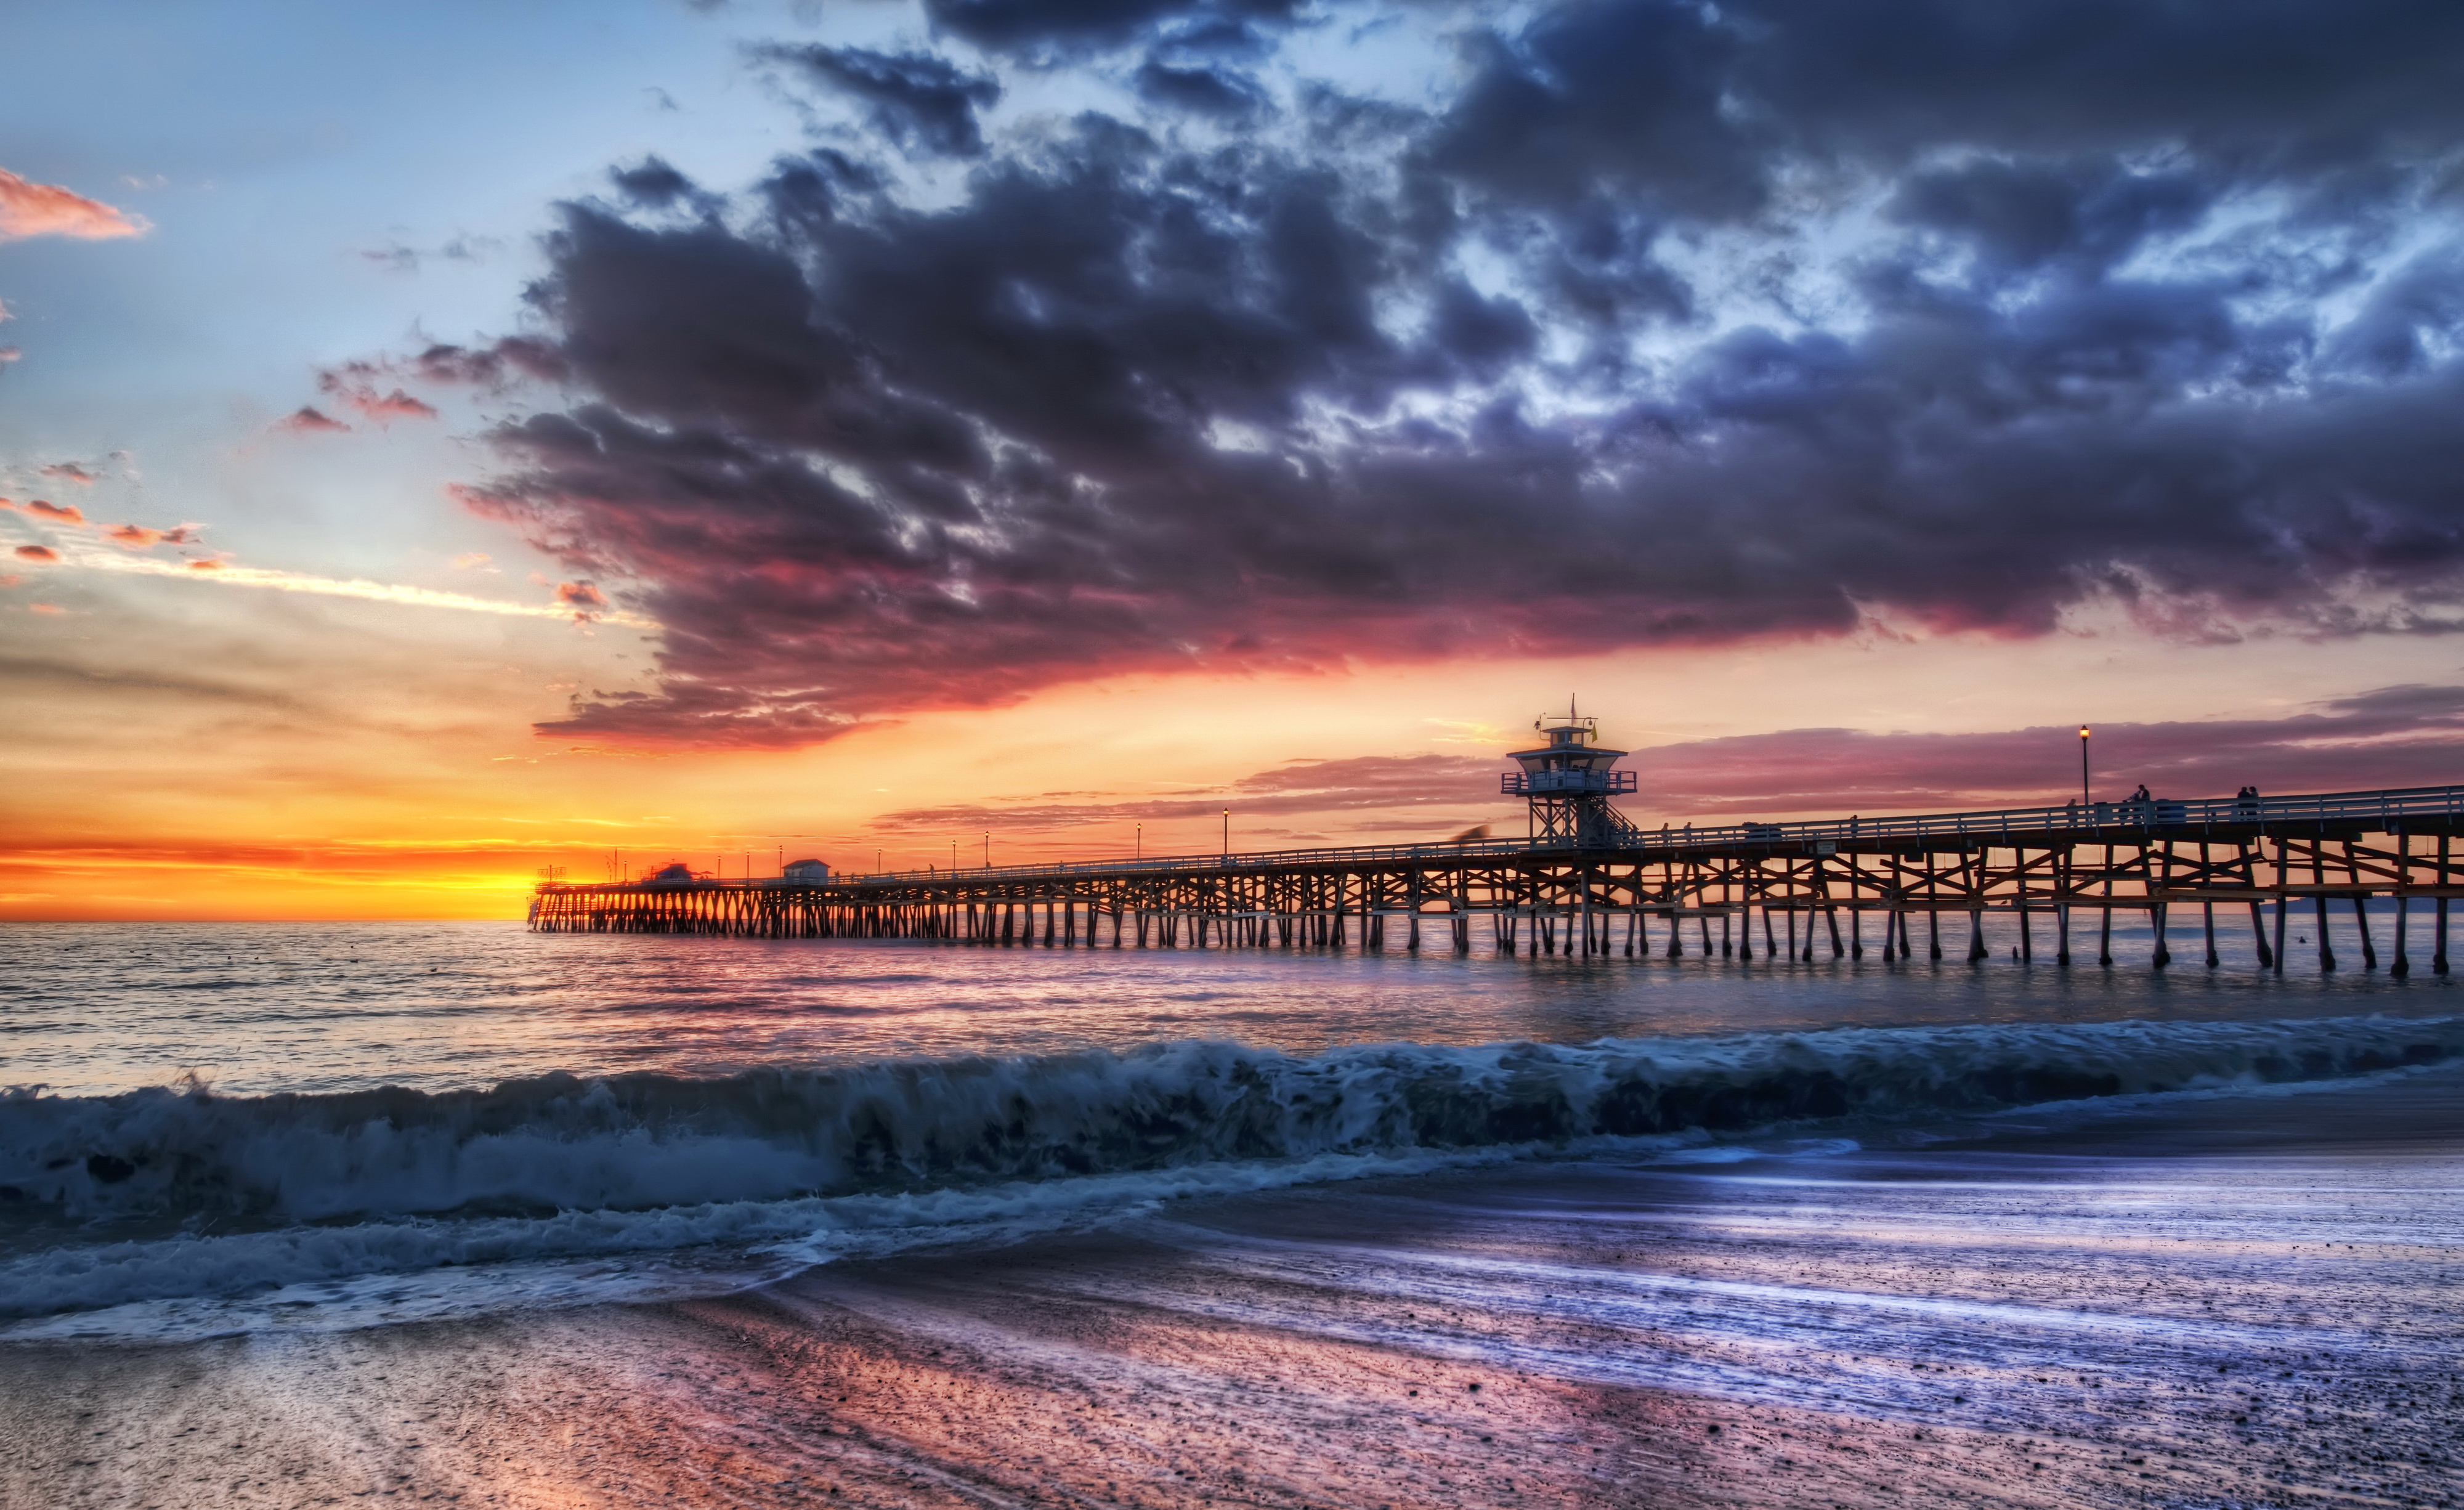 壁紙 4000x2451 アメリカ合衆国 海岸 桟橋 朝焼けと日没 空 波 カリフォルニア州 自然 ダウンロード 写真